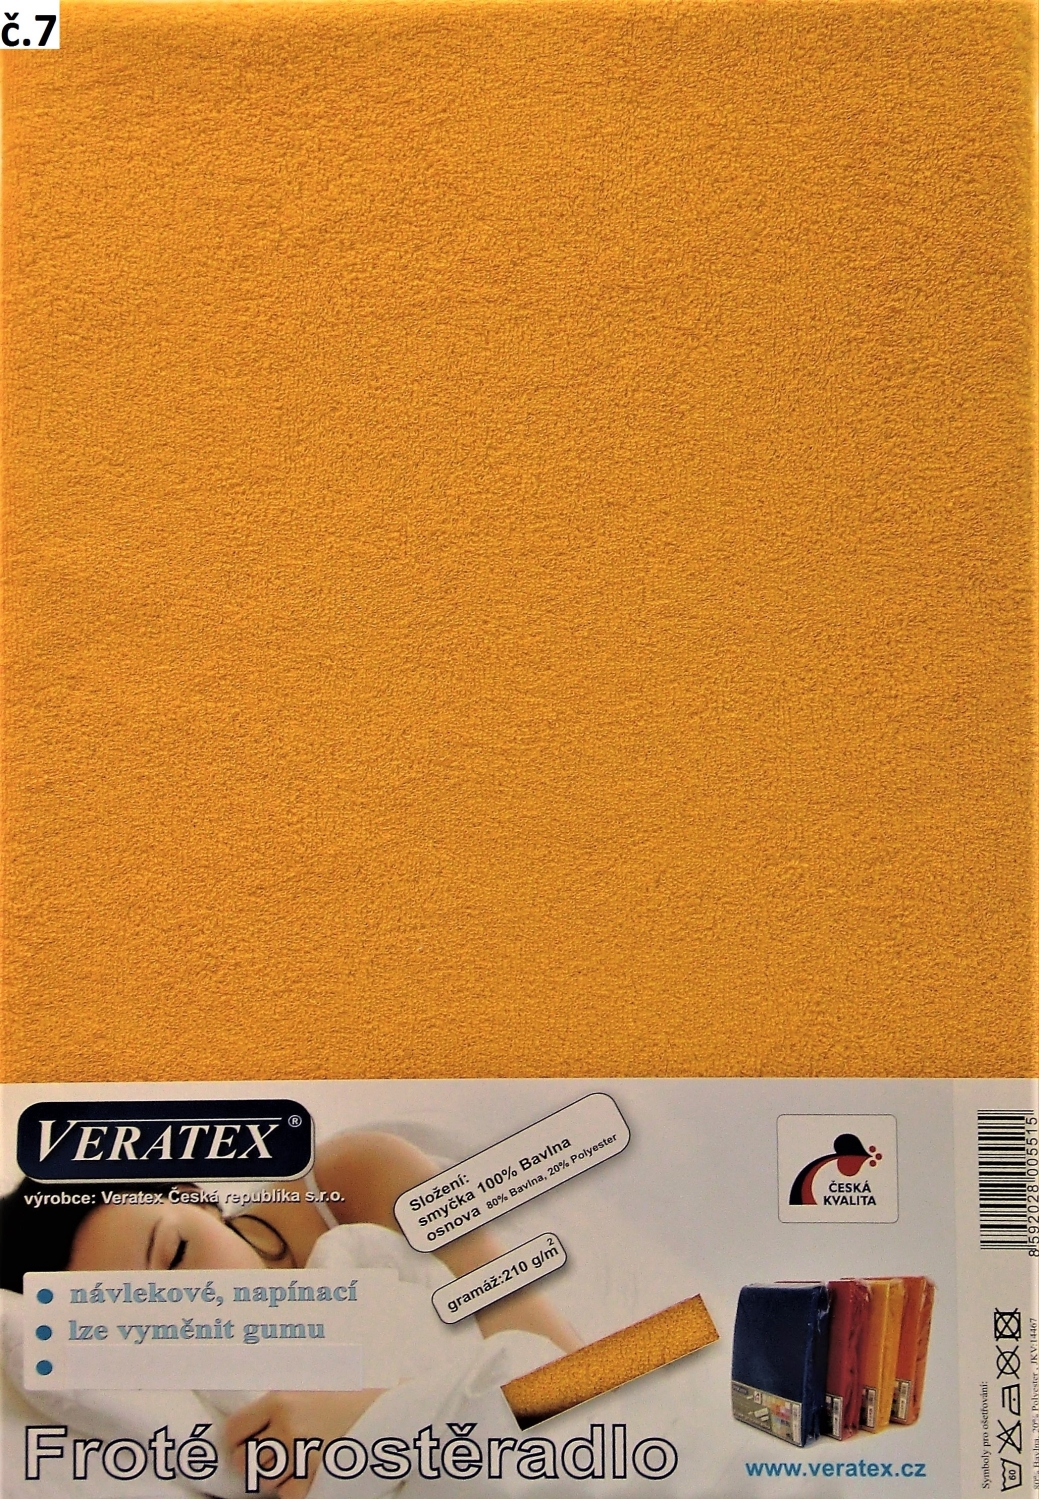 Veratex Froté prostěradlo 80x220/16 cm (č. 7-sytě žlutá)